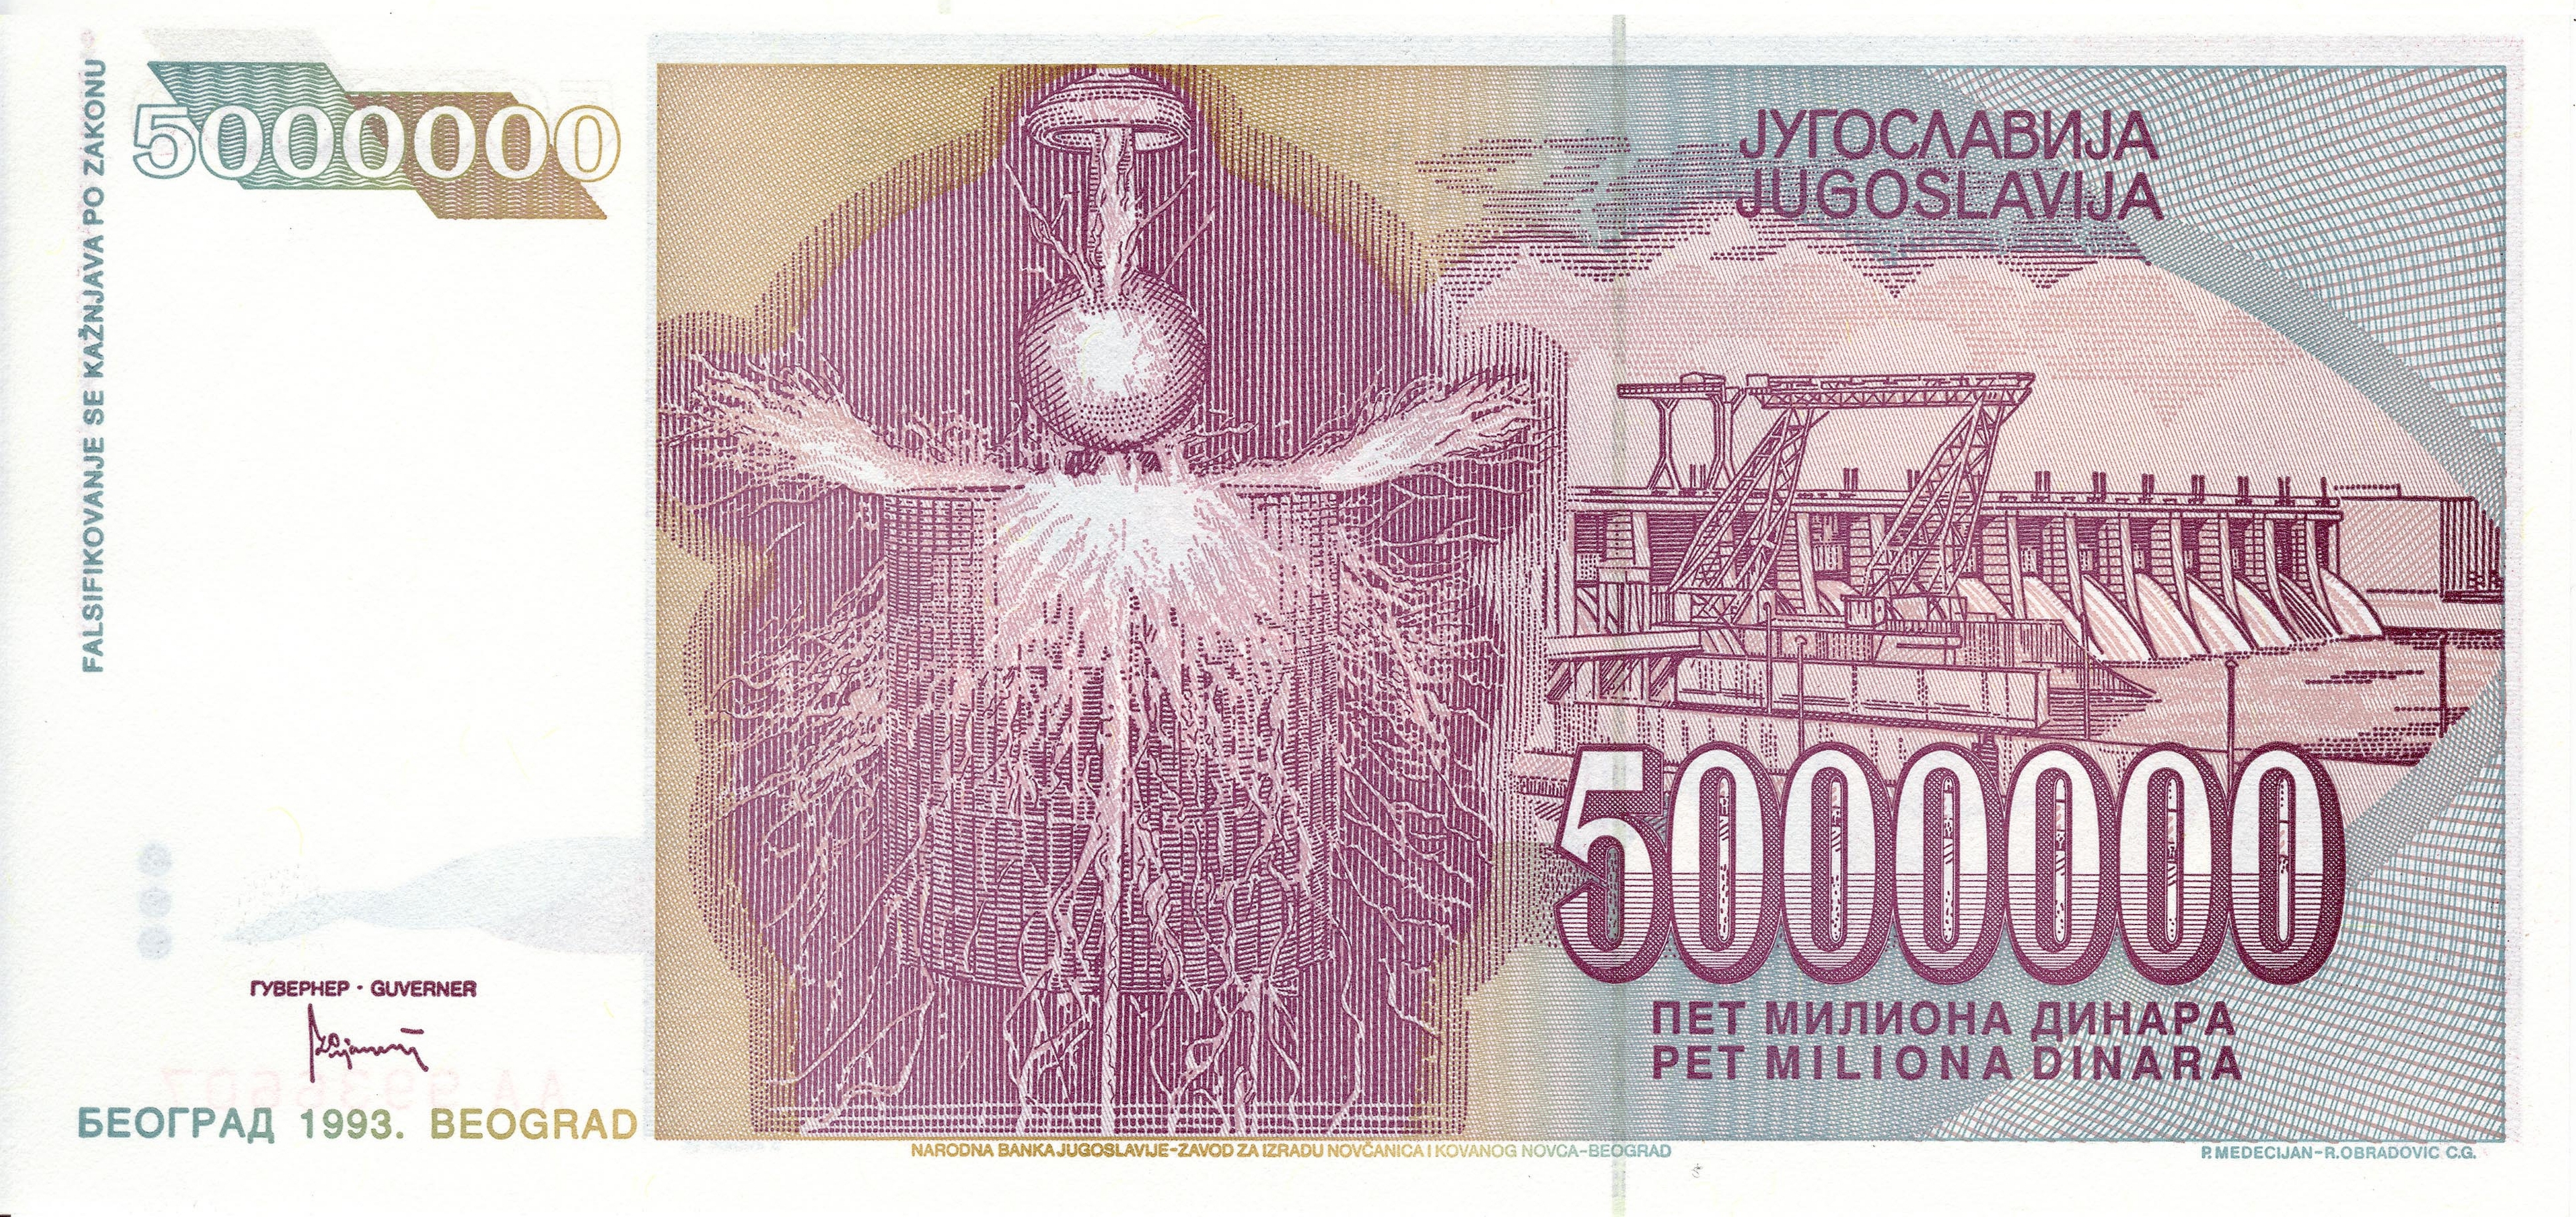 Yugoslav dinar HD Wallpaper